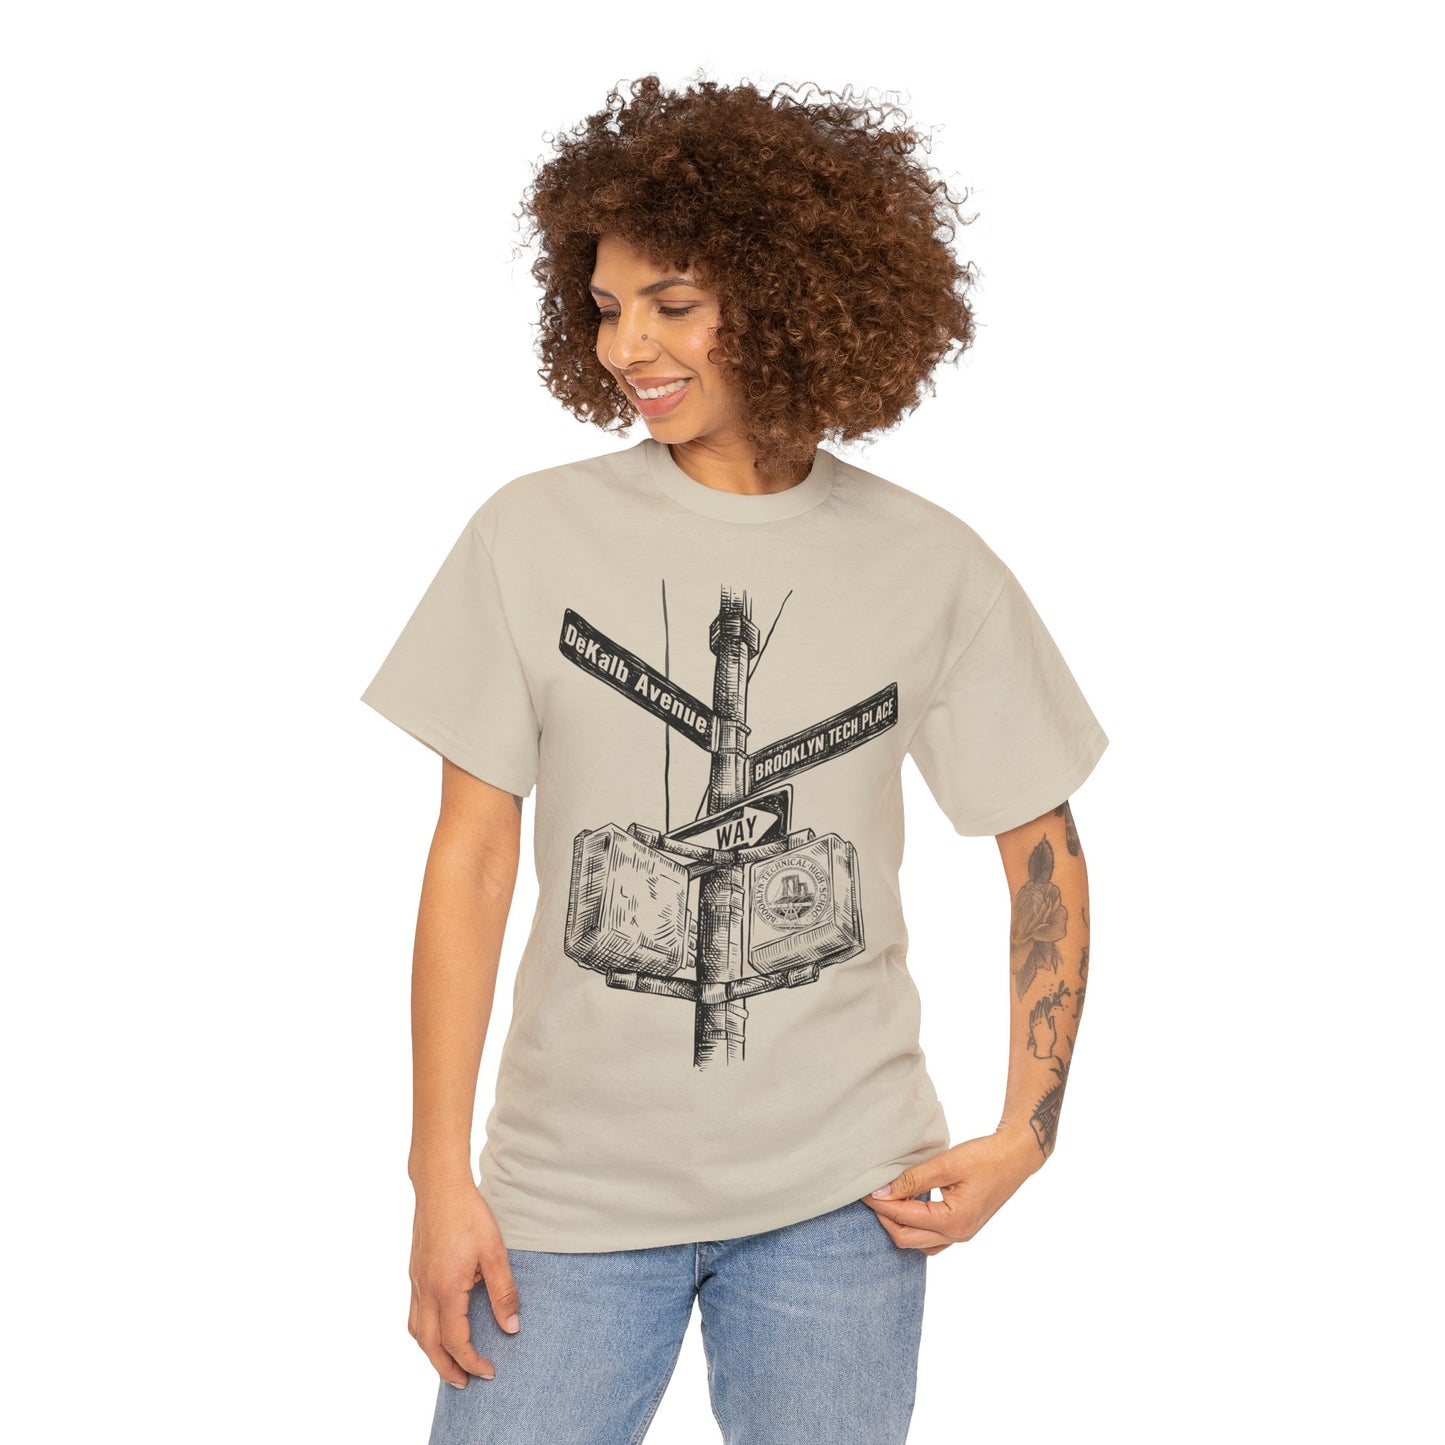 Boutique - Dekalb Ave & Brooklyn Tech Pl - Men's Heavy Cotton T-Shirt - (black Graphic)